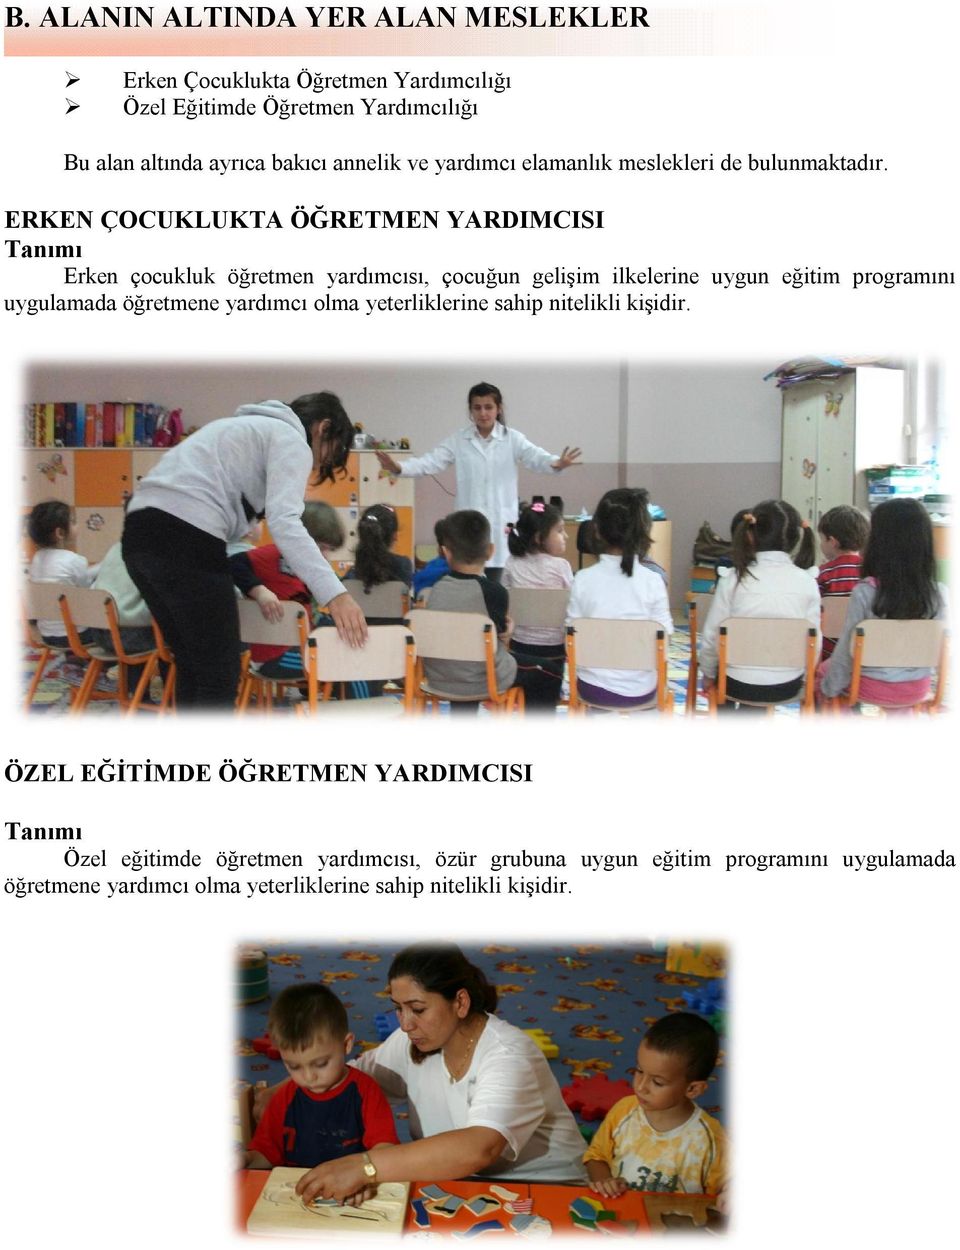 ERKEN ÇOCUKLUKTA ÖĞRETMEN YARDIMCISI Tanımı Erken çocukluk öğretmen yardımcısı, çocuğun gelişim ilkelerine uygun eğitim programını uygulamada